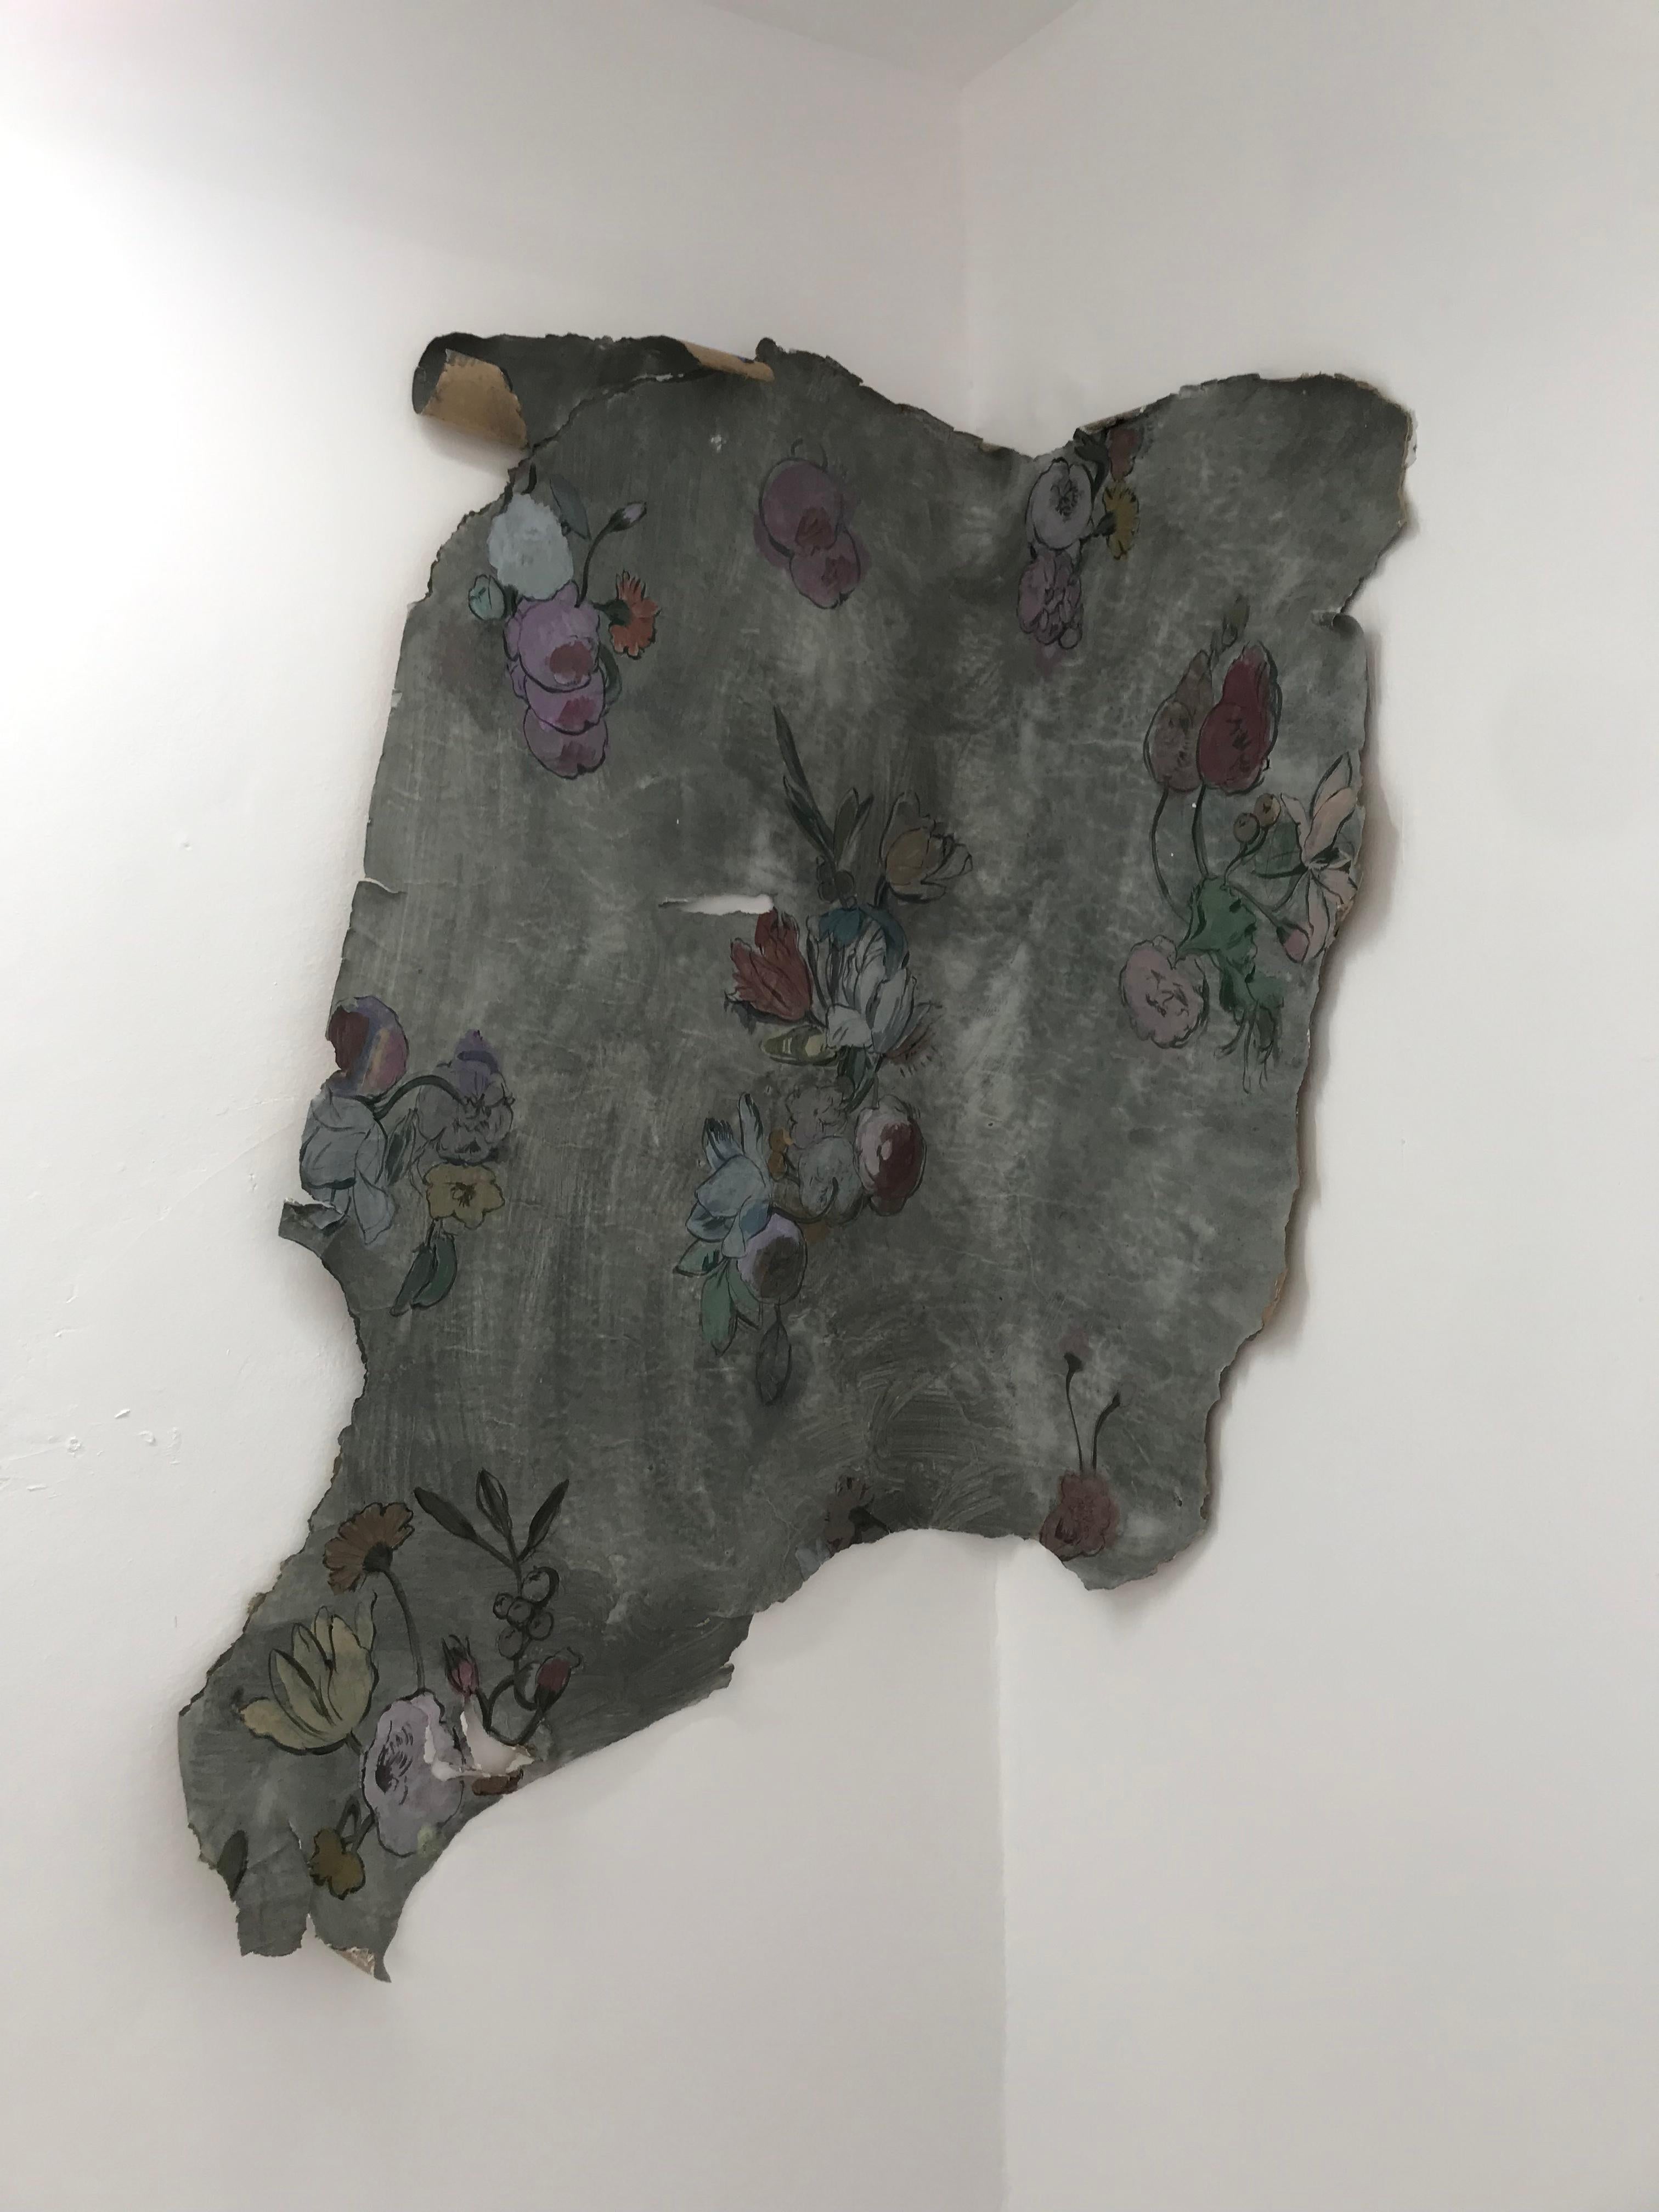 Gonzalo García Figurative Painting - "Fragmento de memoria en el espacio", tapestry, allegory, bouquets, figurative